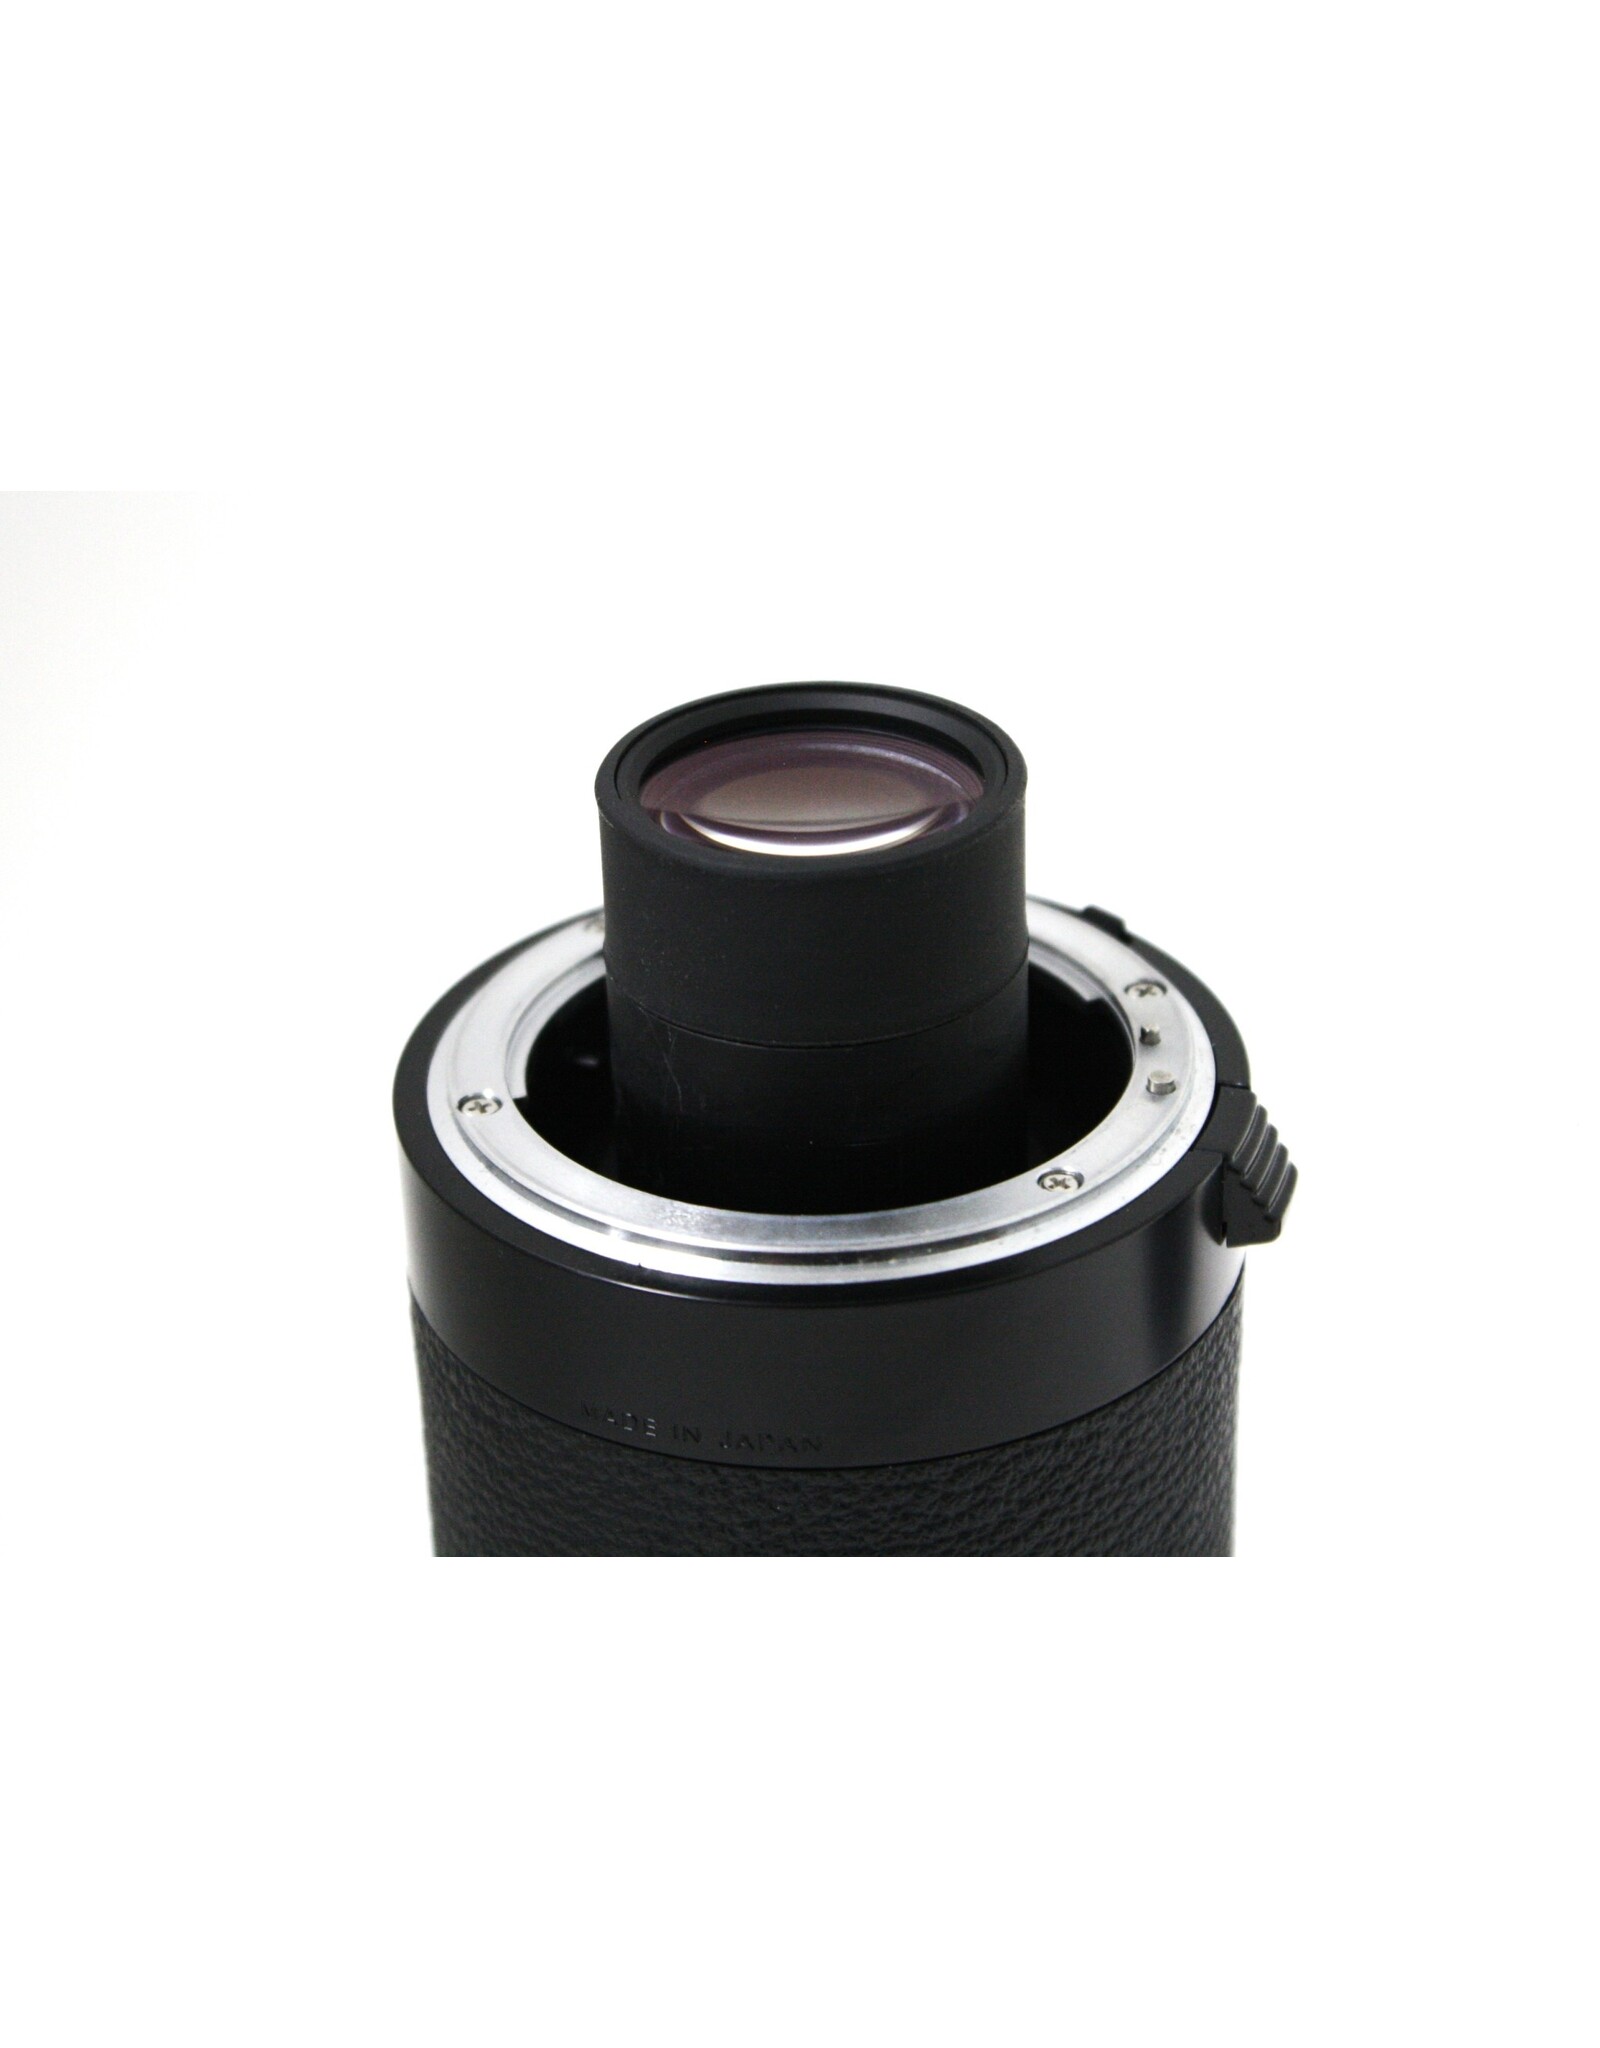 Nikon Nikon Ai-s Teleconverter TC-301 2X MF Tele converter Lens [Near MINT]  (Pre-owned)